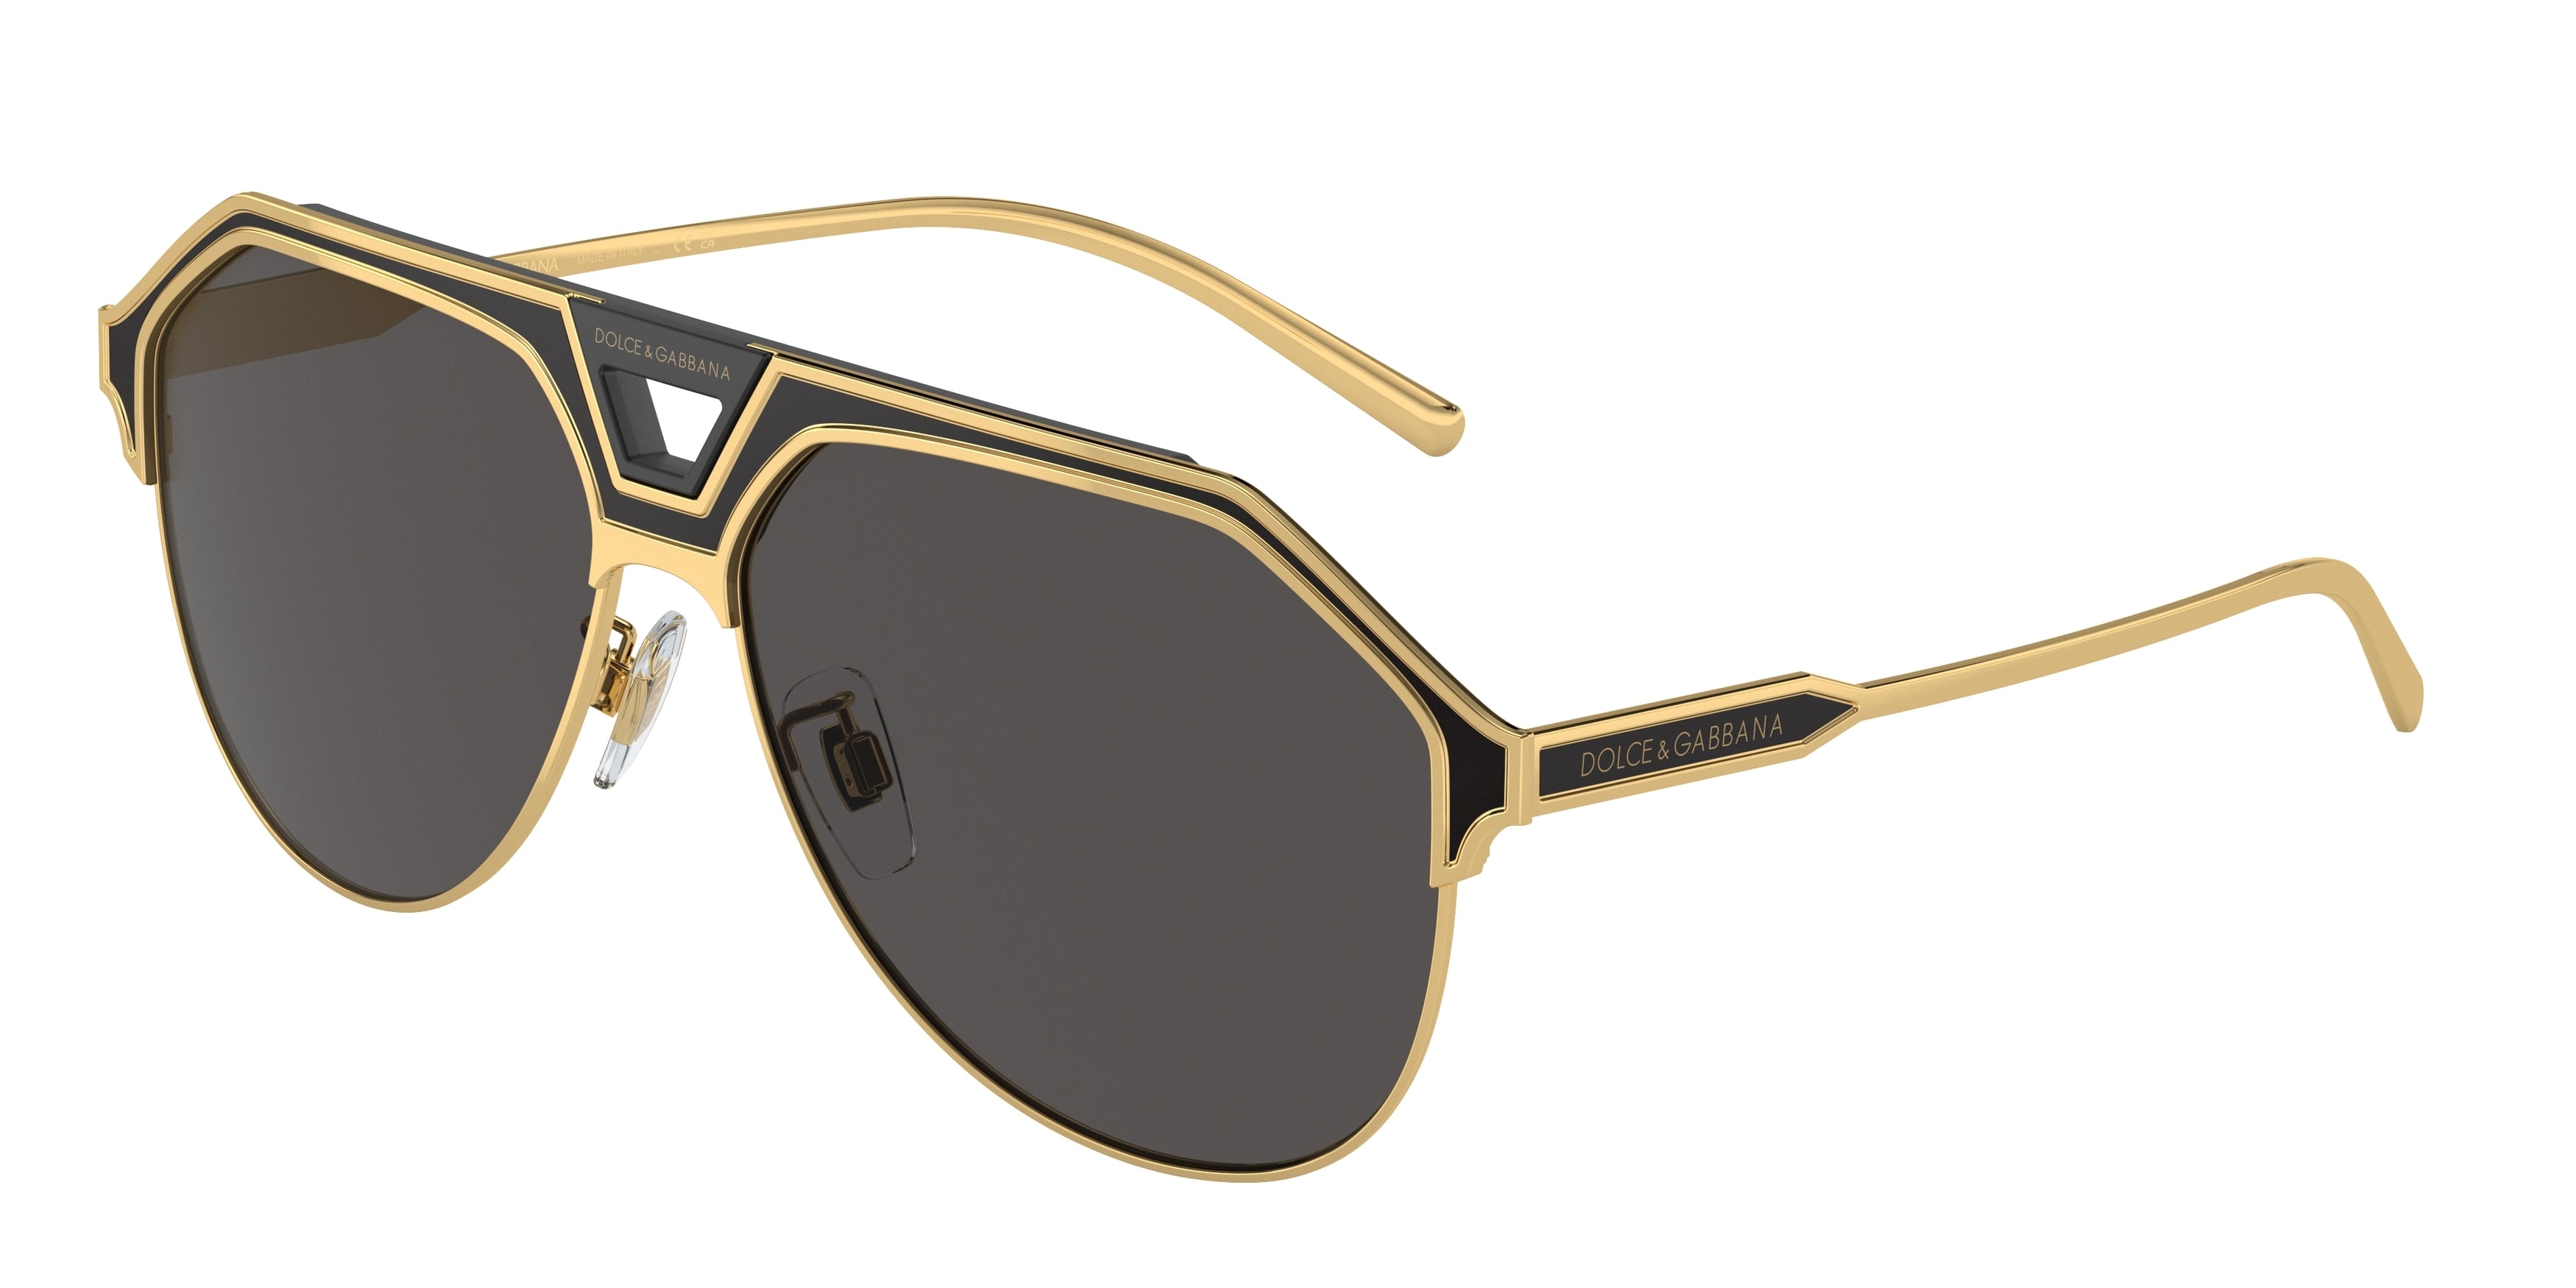 DOLCE & GABBANA DG2257 Pilot Sunglasses  133487-Gold/Matte Black 60-150-13 - Color Map Gold